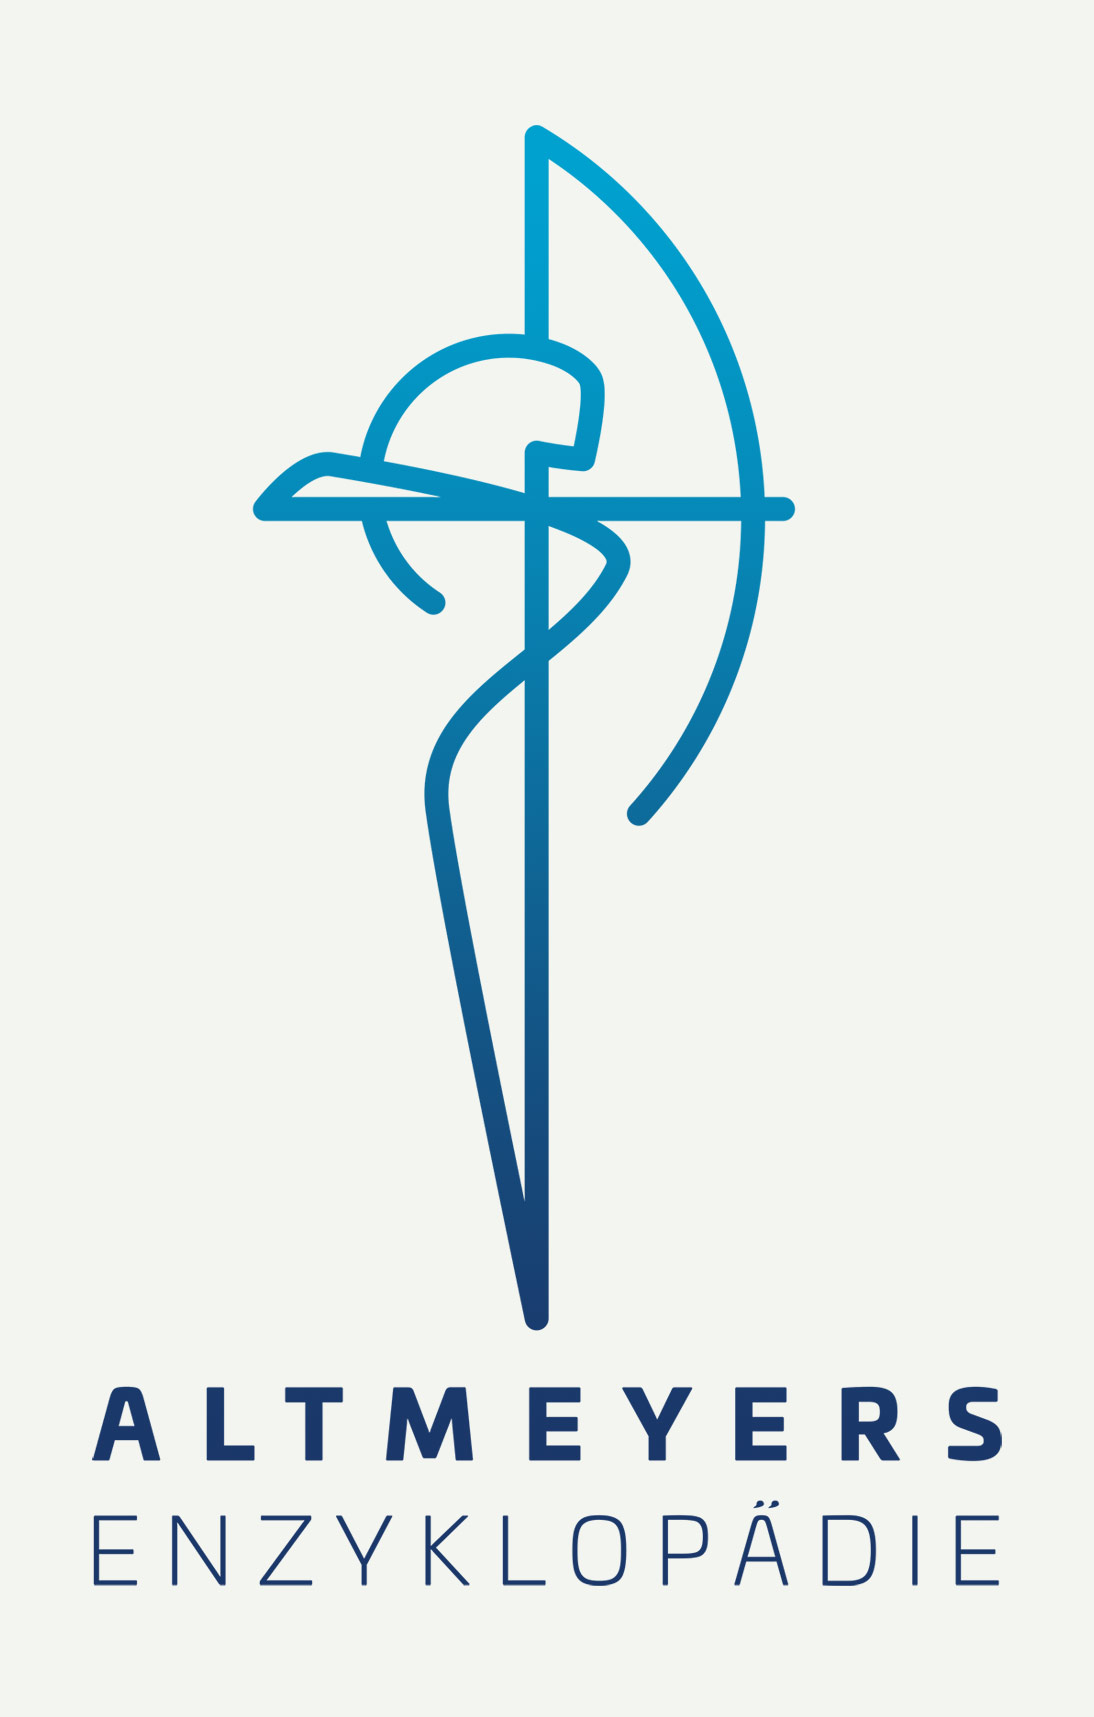 trommer altmeyer logo